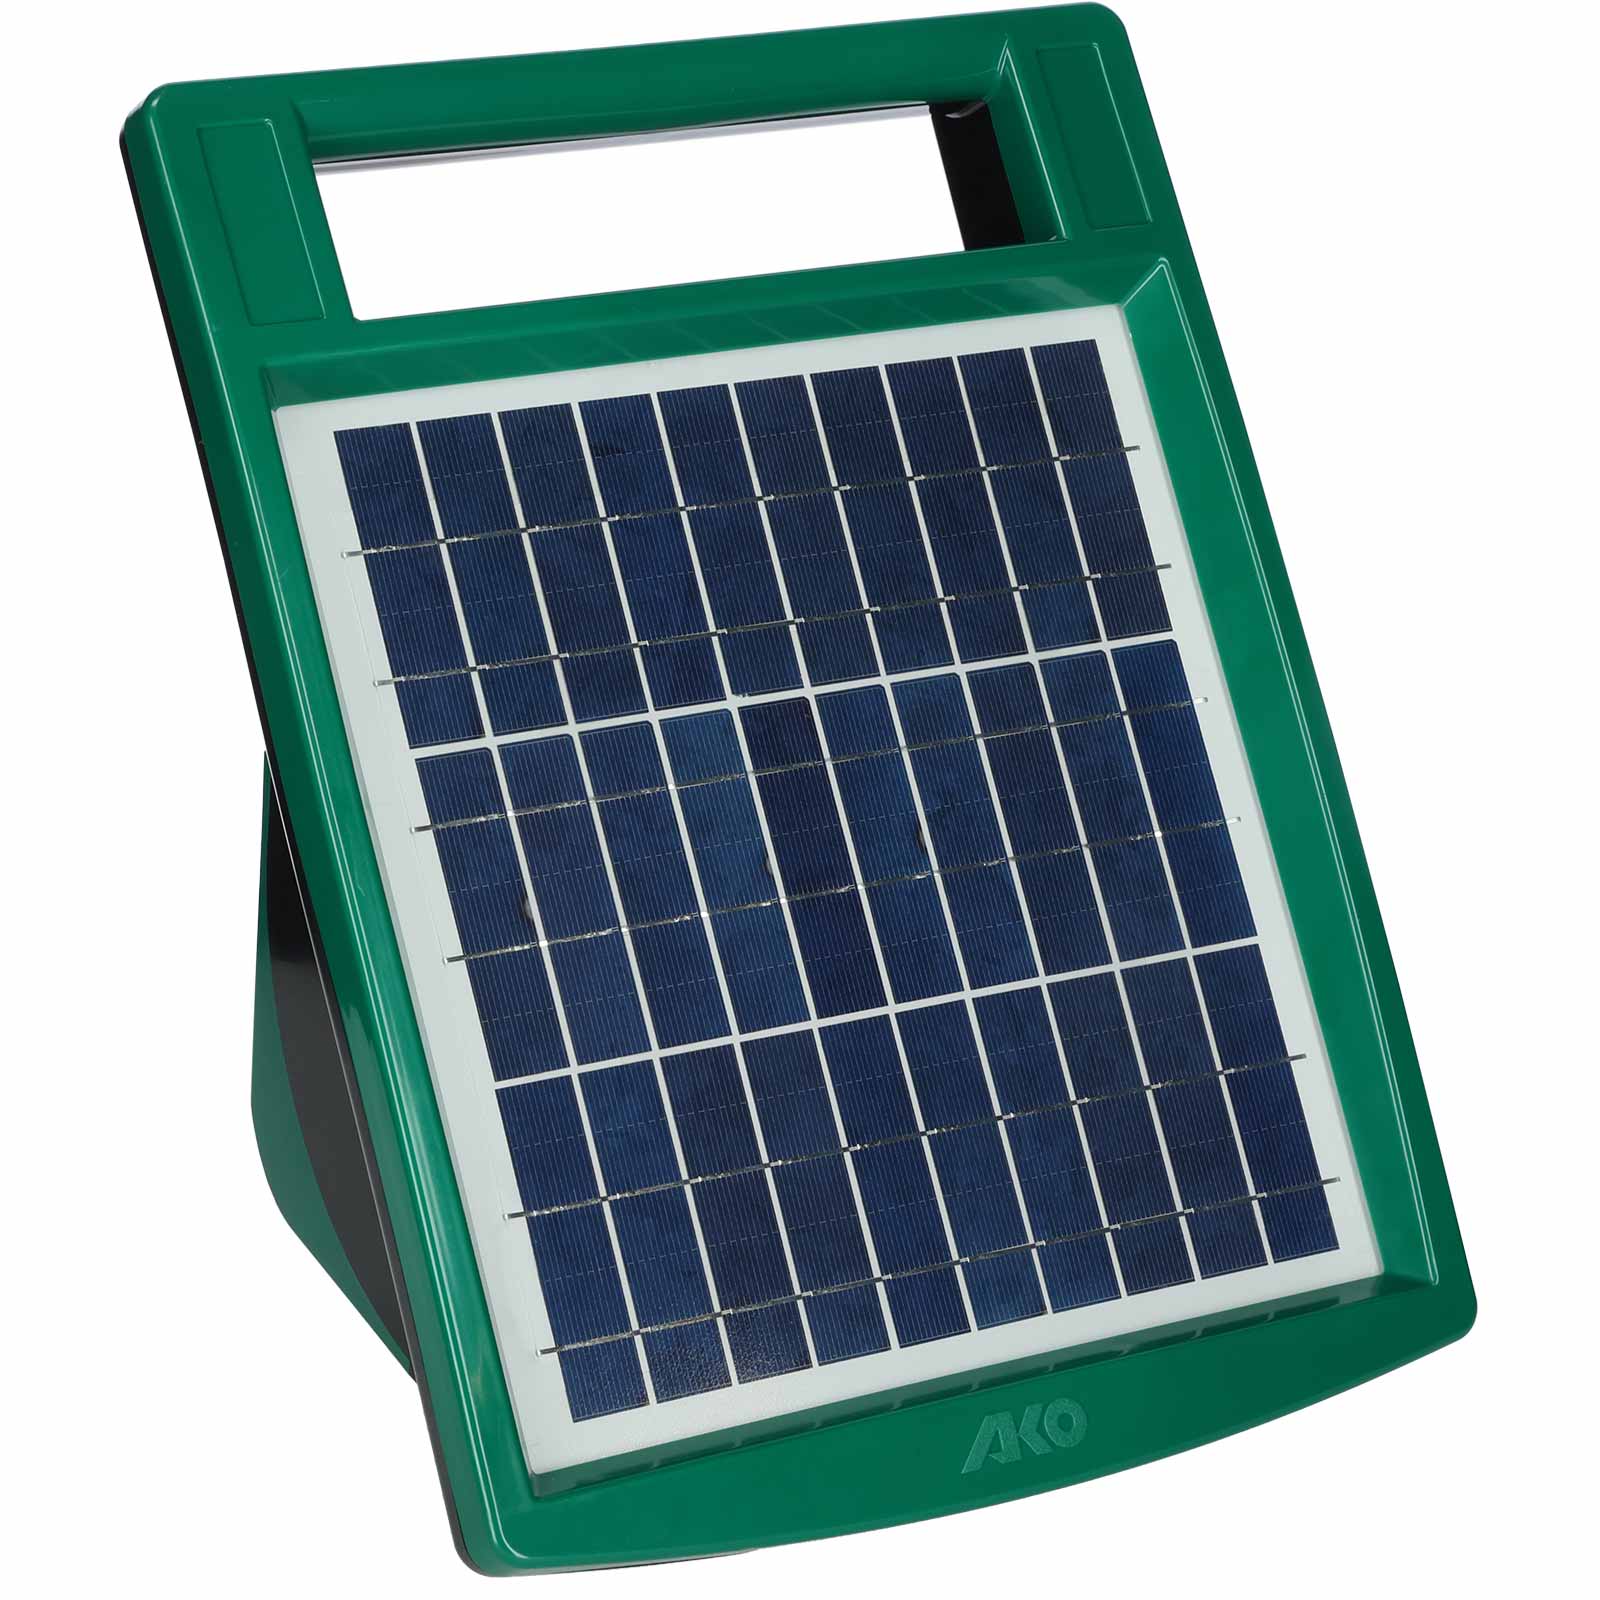 Électrificateur solaire Ako Sun Power S 1000 8 Watt 12V, 1,40 Joule